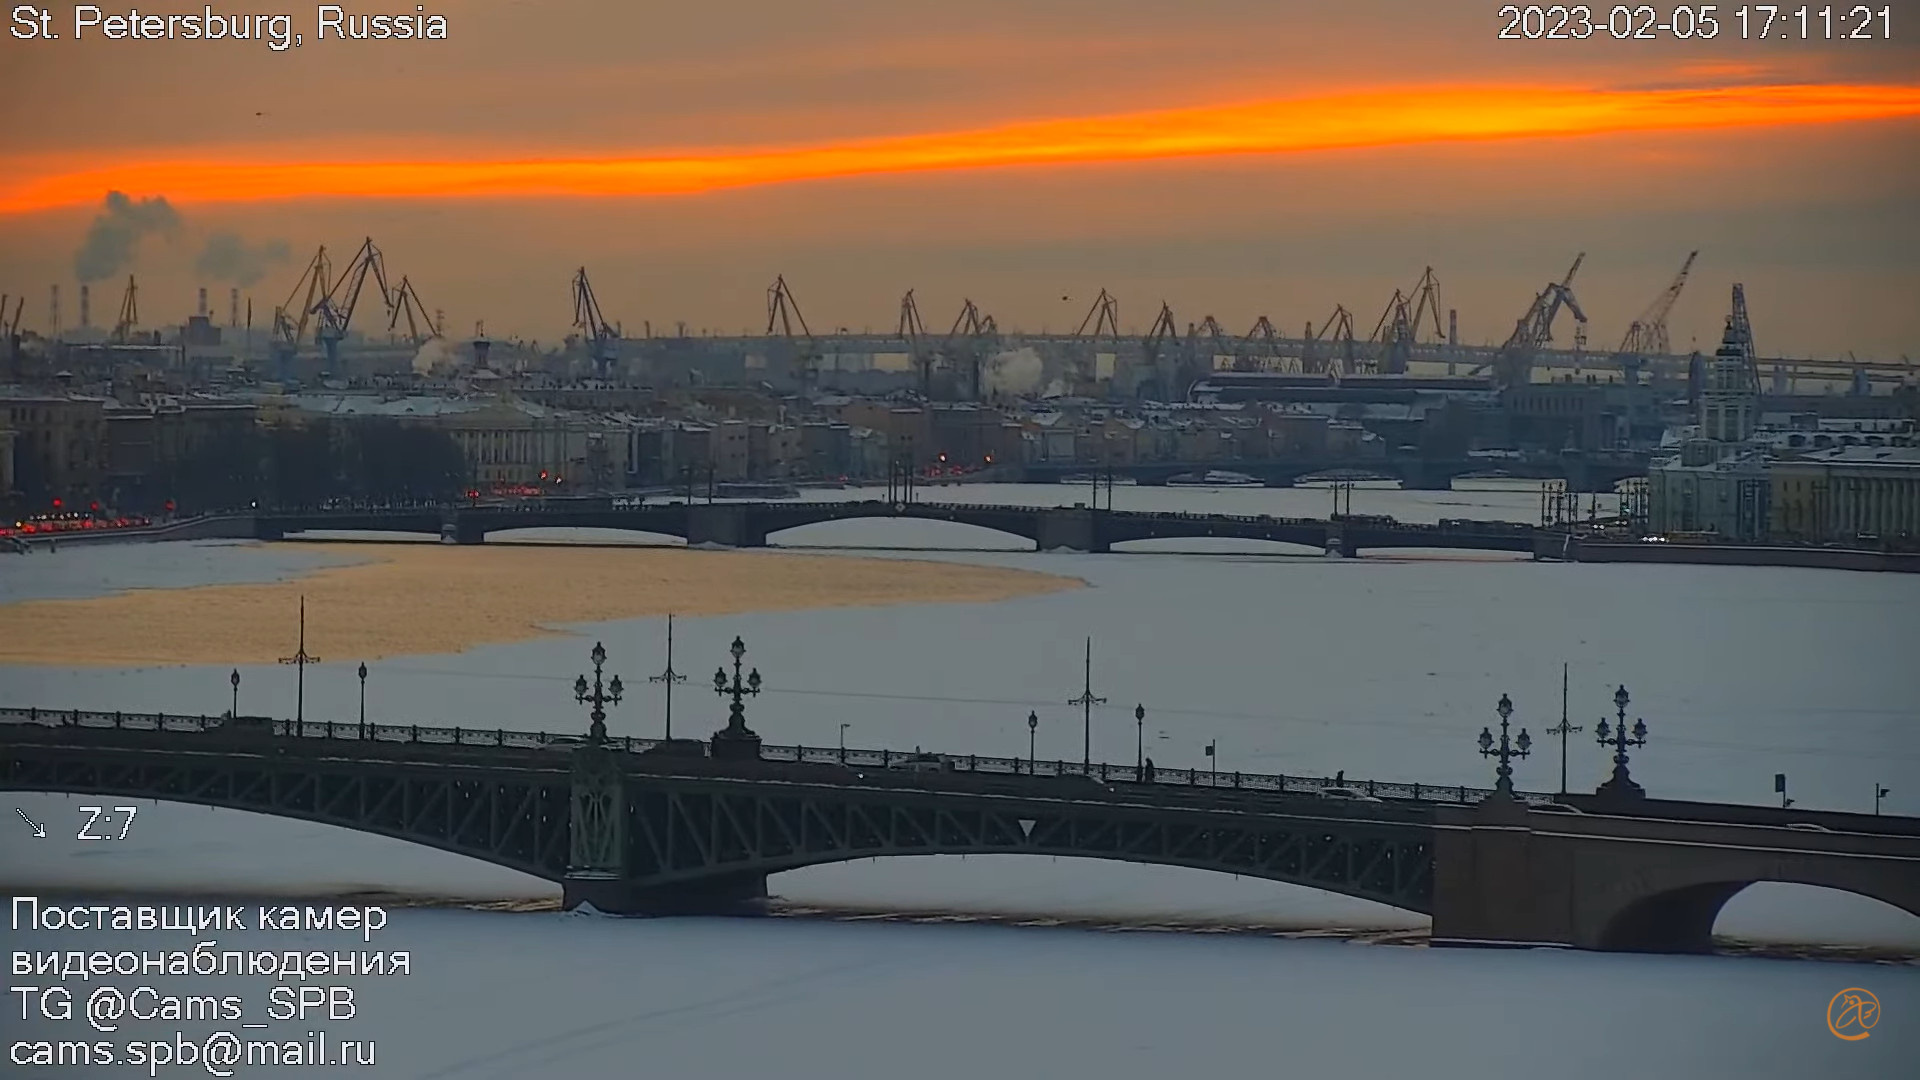 Смотрим ру страх над невой. Смоленский мост Санкт-Петербург через Неву. Санкт-Петербург в феврале. Город на Неве. Город во льду.